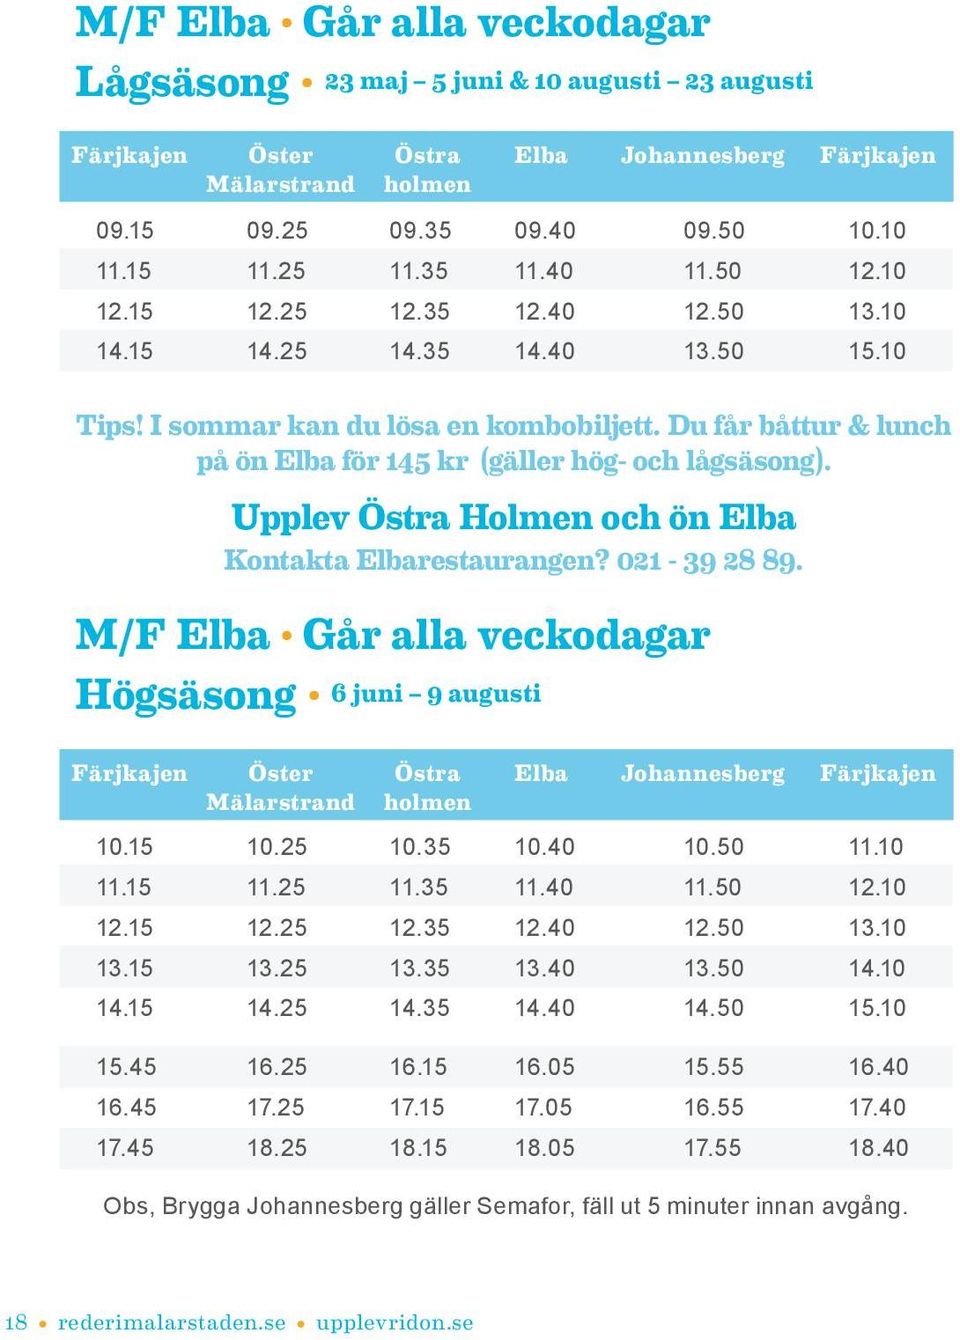 Du får båttur & lunch på ön Elba för 145 kr (gäller hög- och lågsäsong). Upplev Östra Holmen och ön Elba Kontakta Elbarestaurangen? 021-39 28 89.